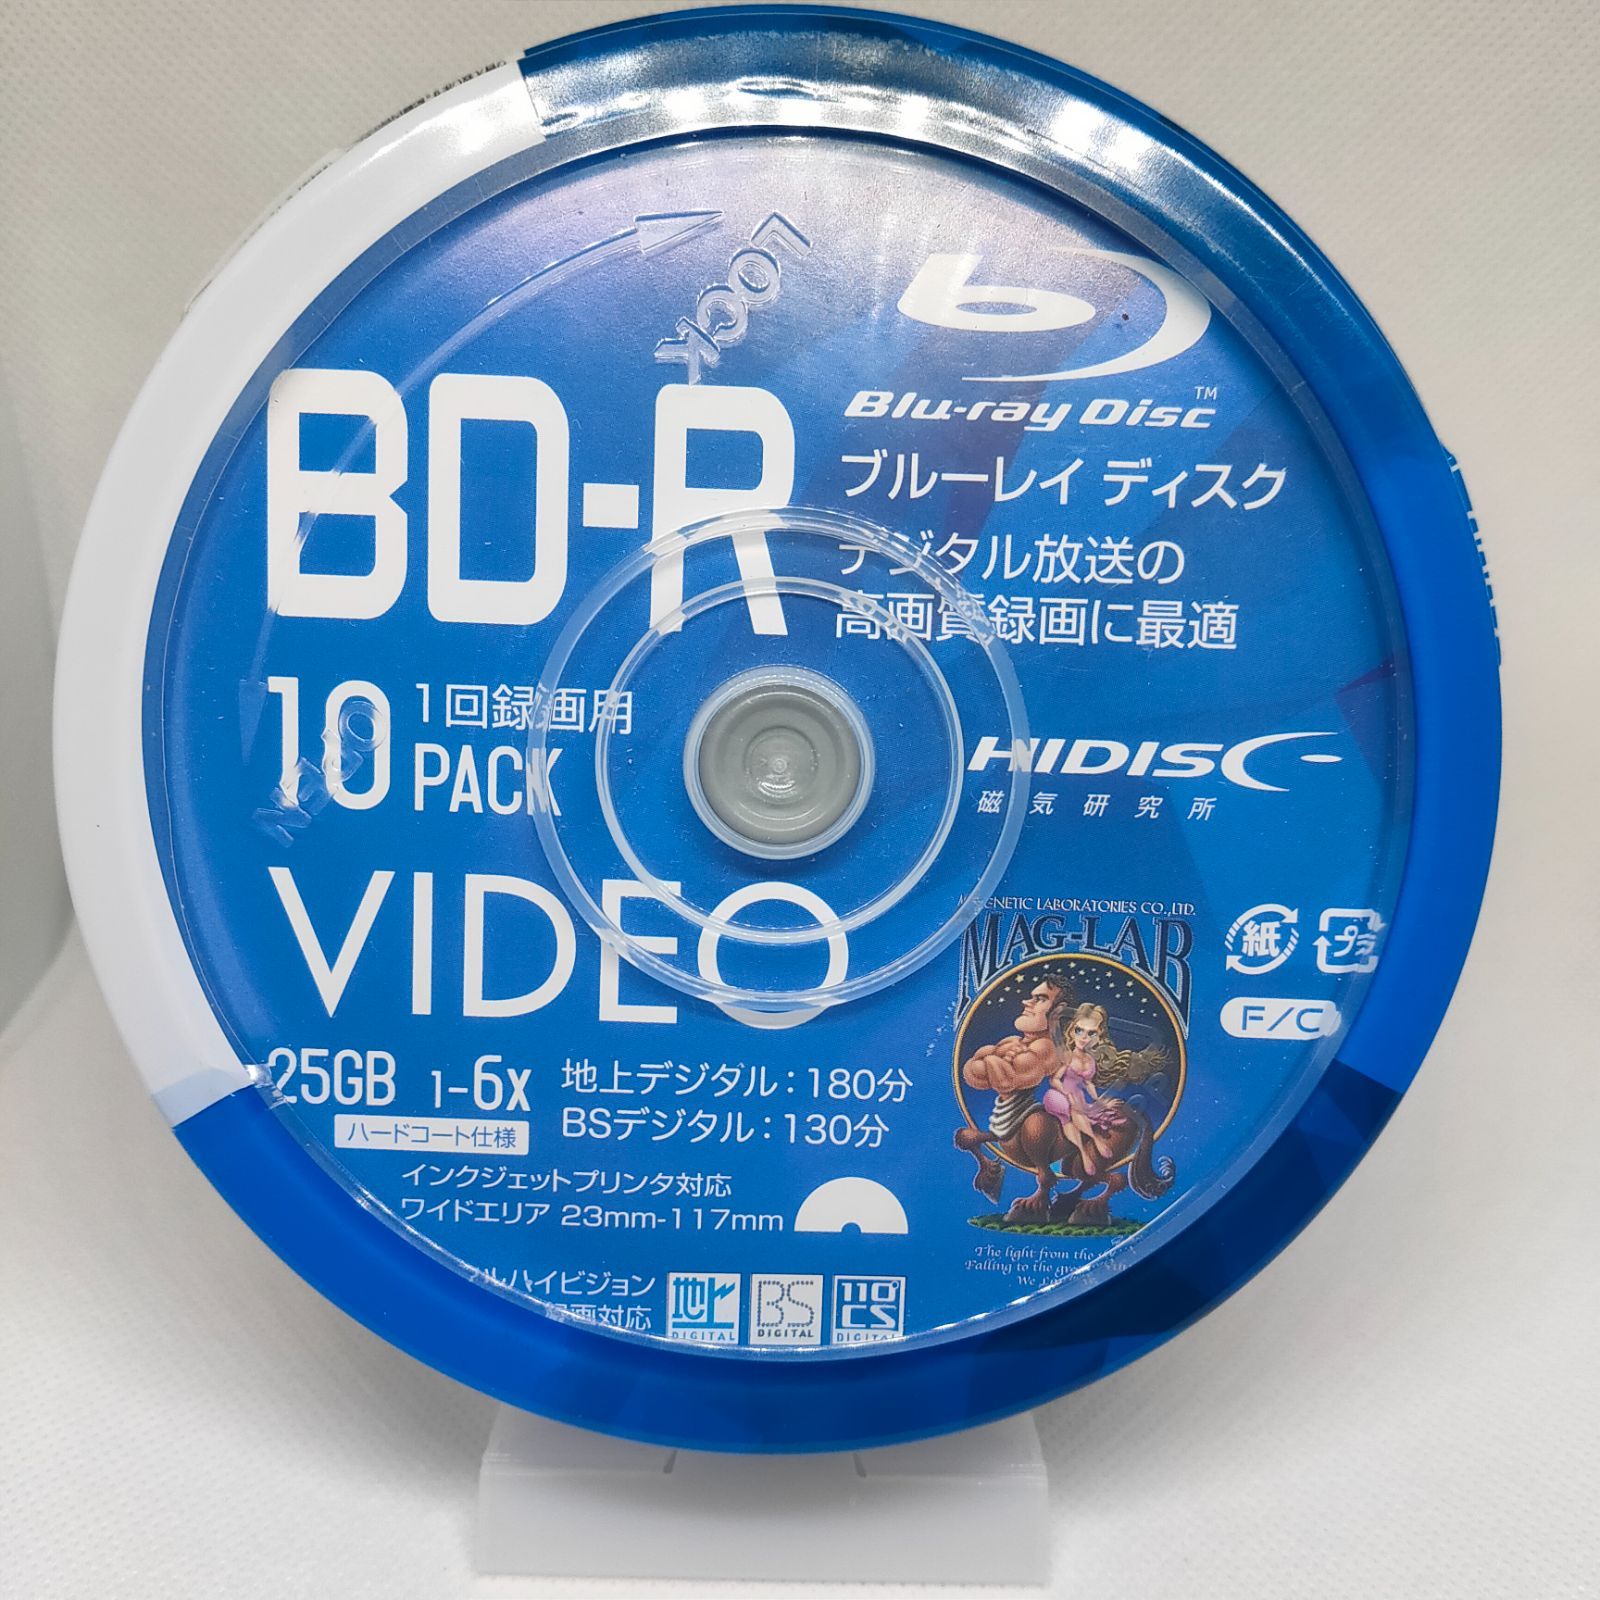 HI-DISC BD-R HDBDR130RP10 6倍速 10枚